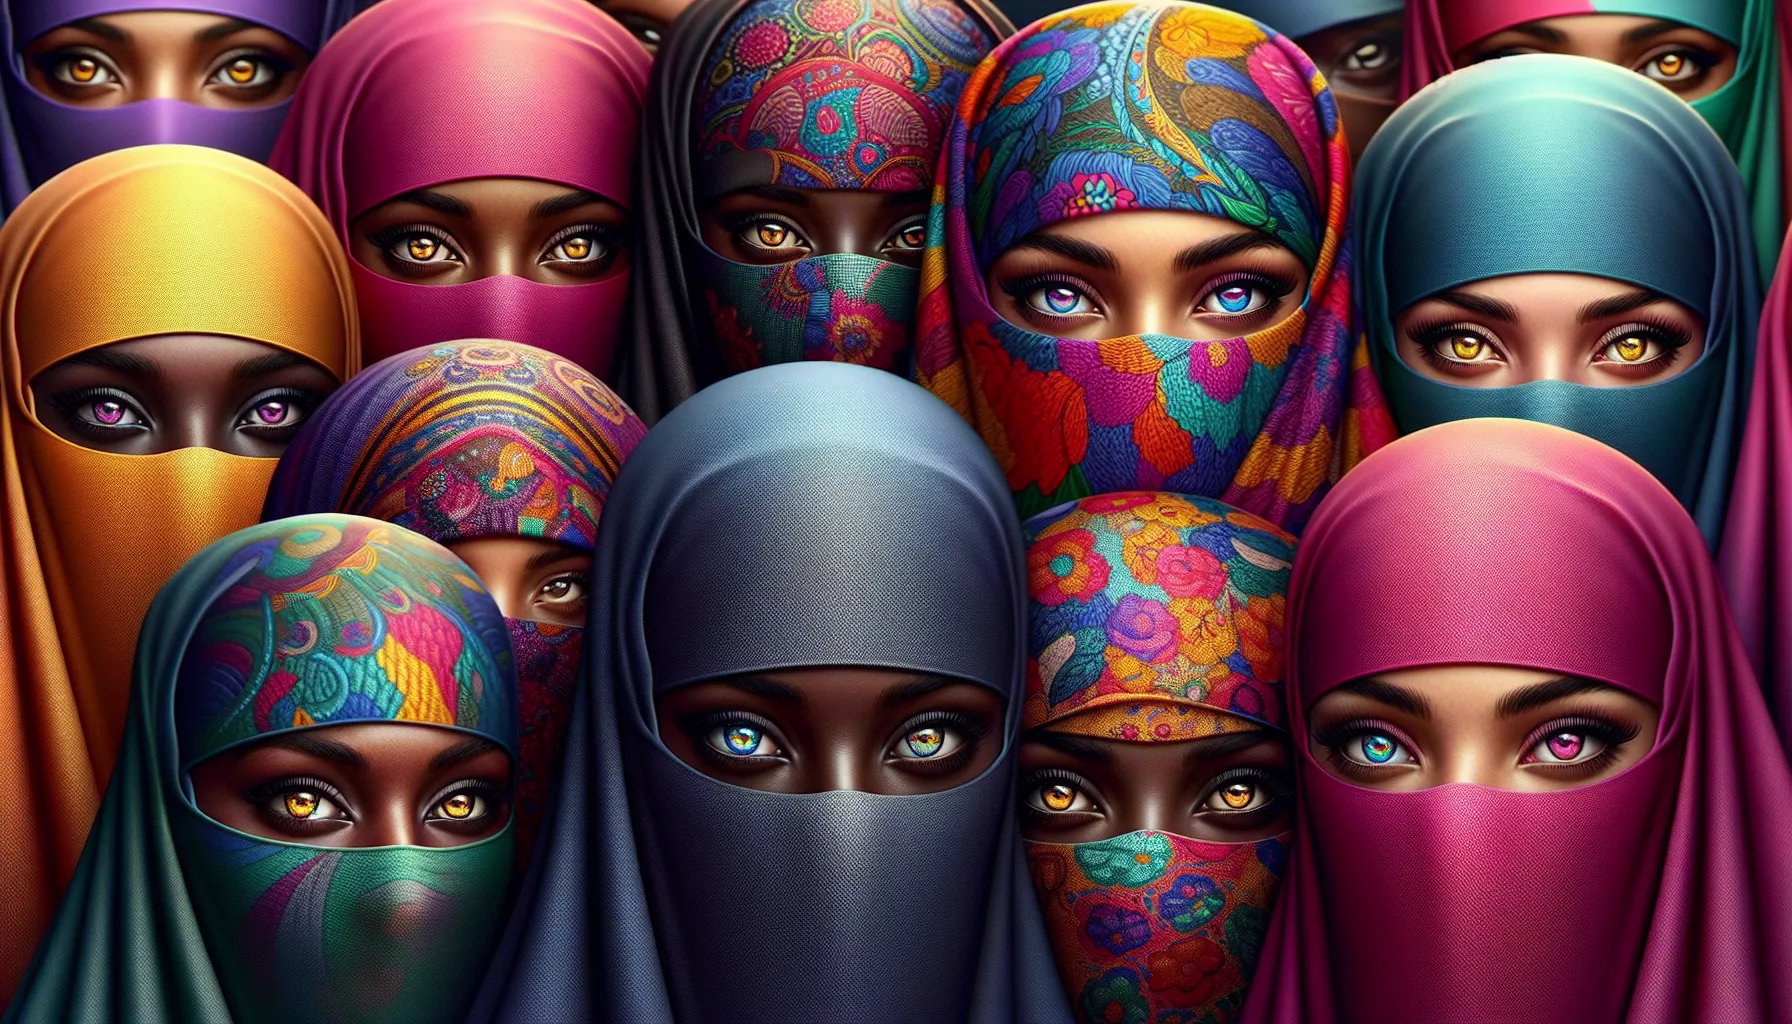 As mulheres que usam burca: Entendendo a cultura islâmica